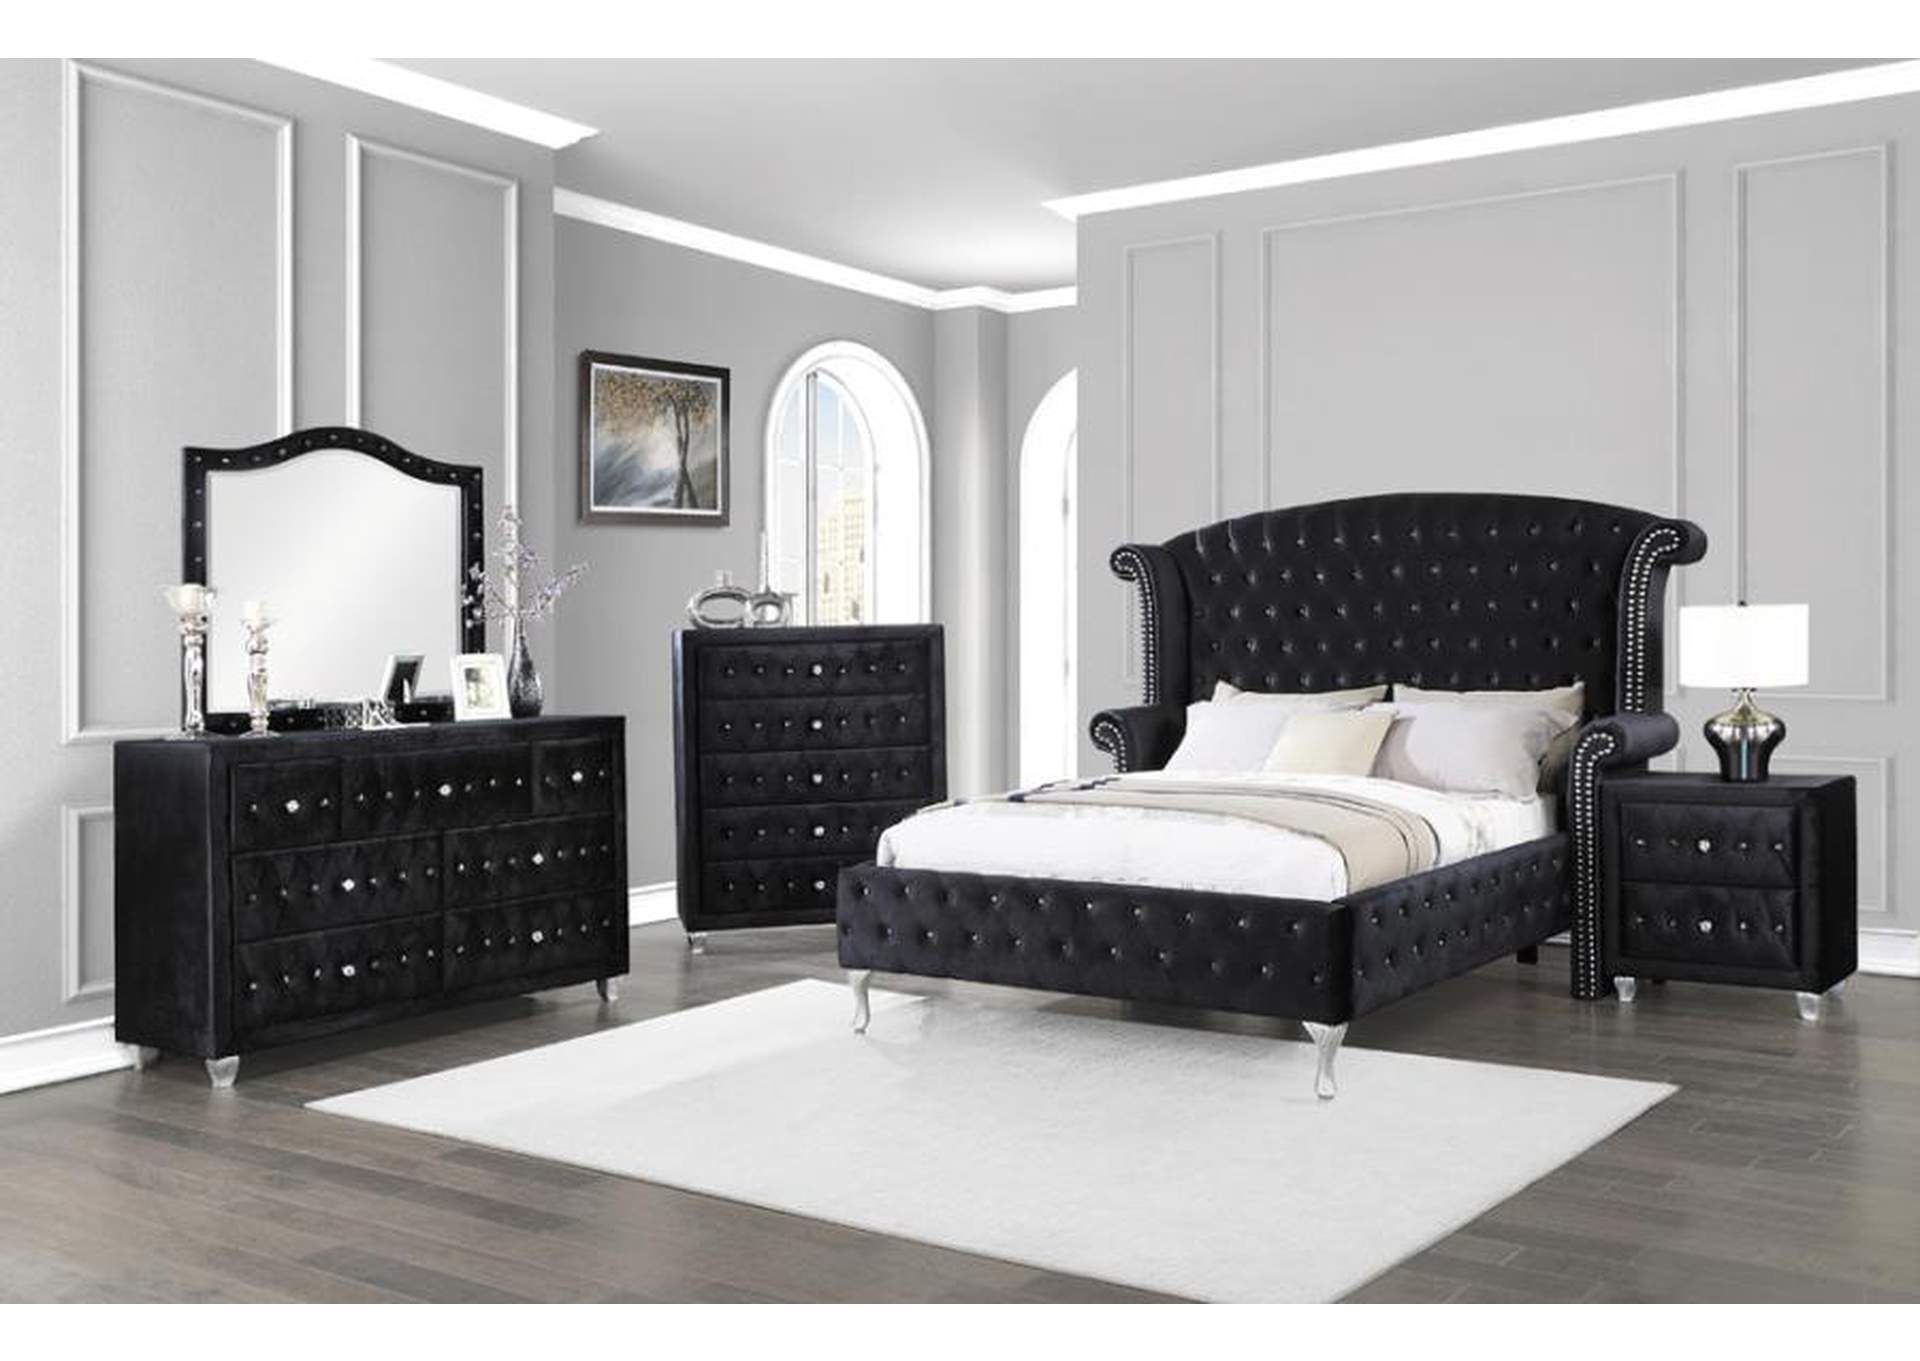 Deanna Eastern King Tufted Upholstered Bed Black,Coaster Furniture